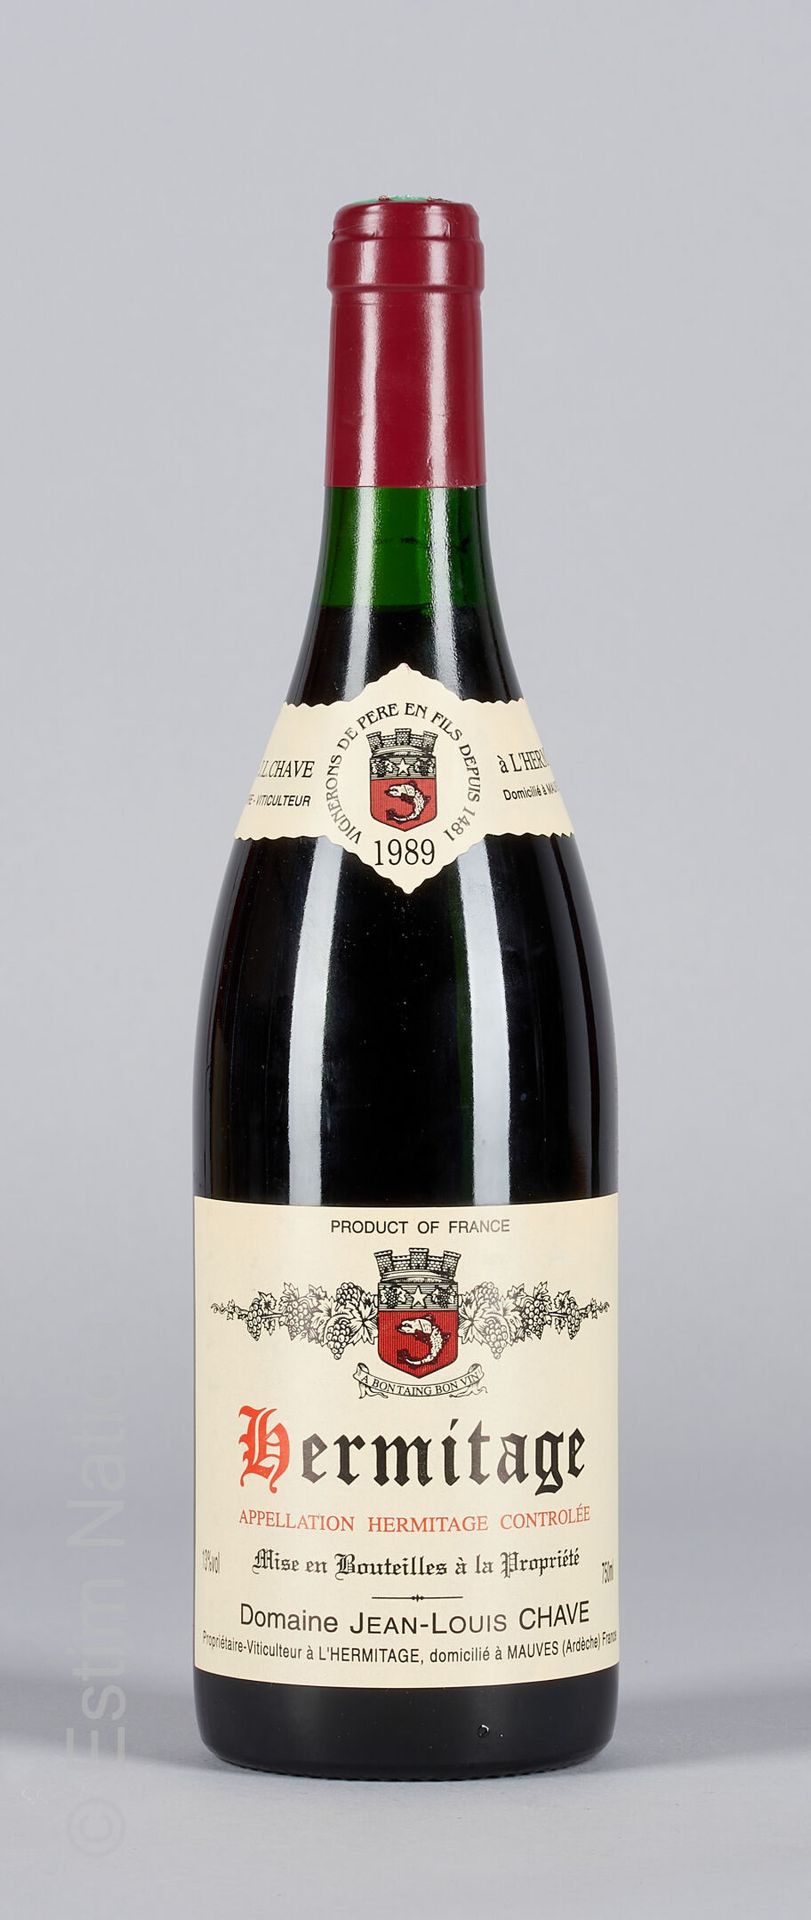 HERMITAGE ROUGE HERMITAGE 1989 Jean-Louis Chave 1瓶

(N. 在2和2.5厘米之间)